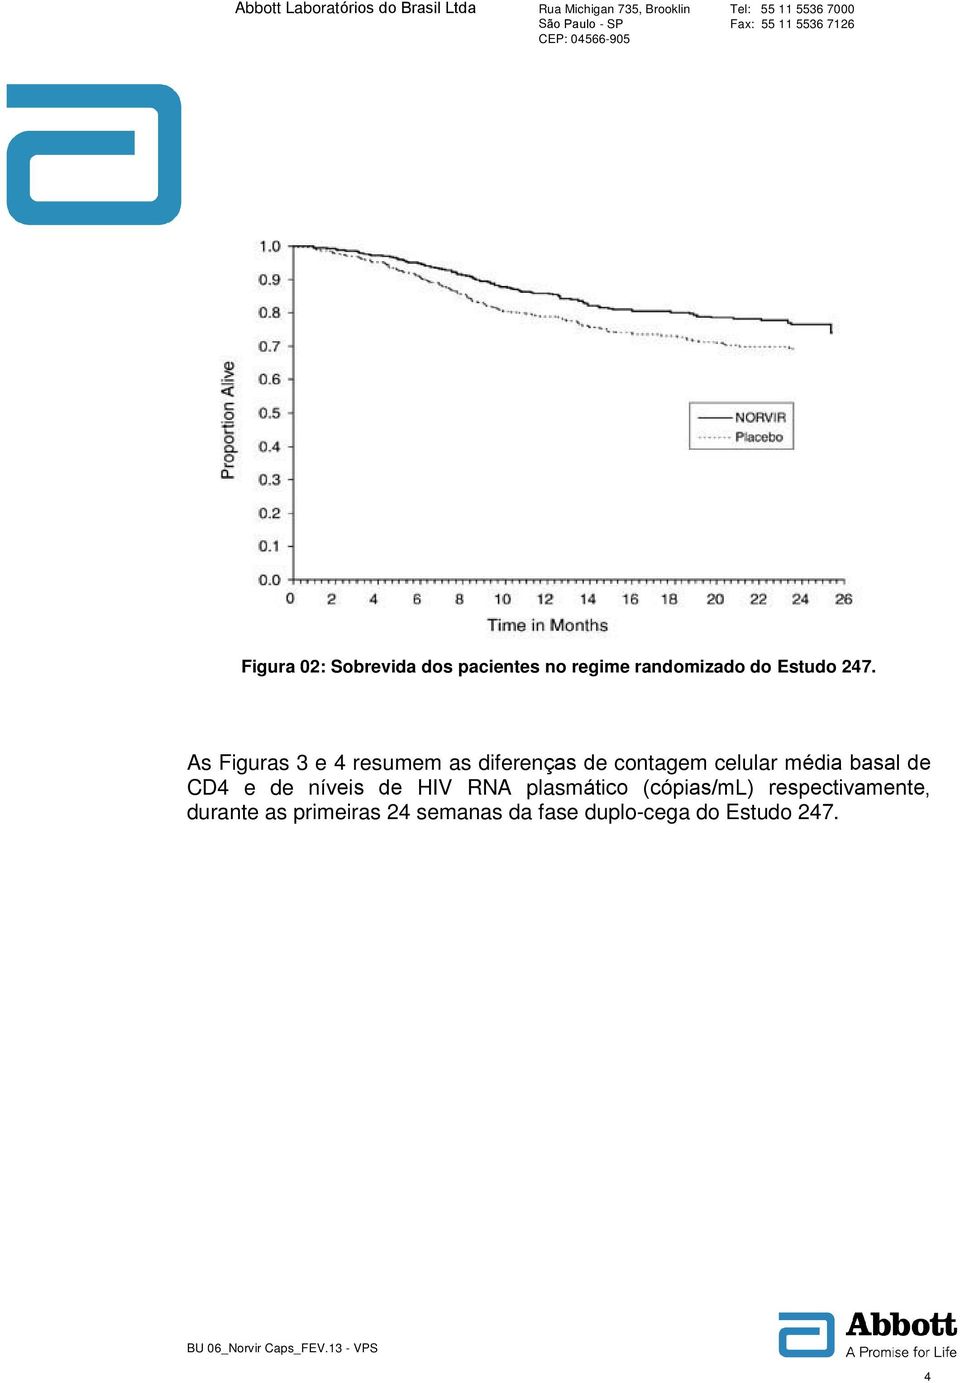 basal de CD4 e de níveis de HIV RNA plasmático (cópias/ml)